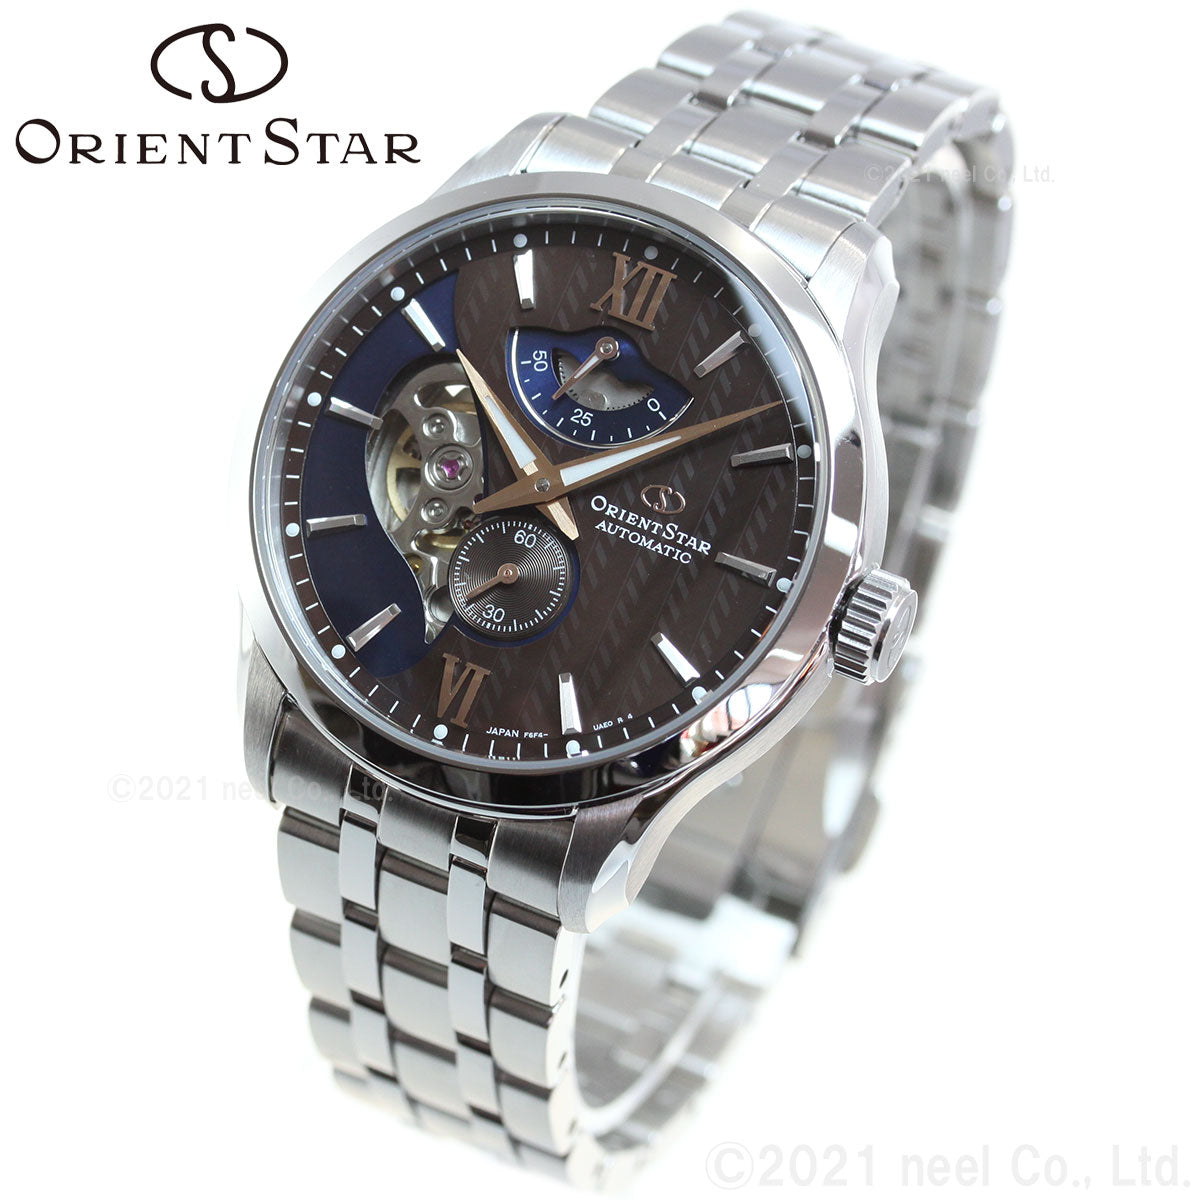 オリエントスター ORIENT STAR 腕時計 メンズ 自動巻き コンテンポラリー CONTEMPORALY レイヤードスケルトン RK-AV0B02Y